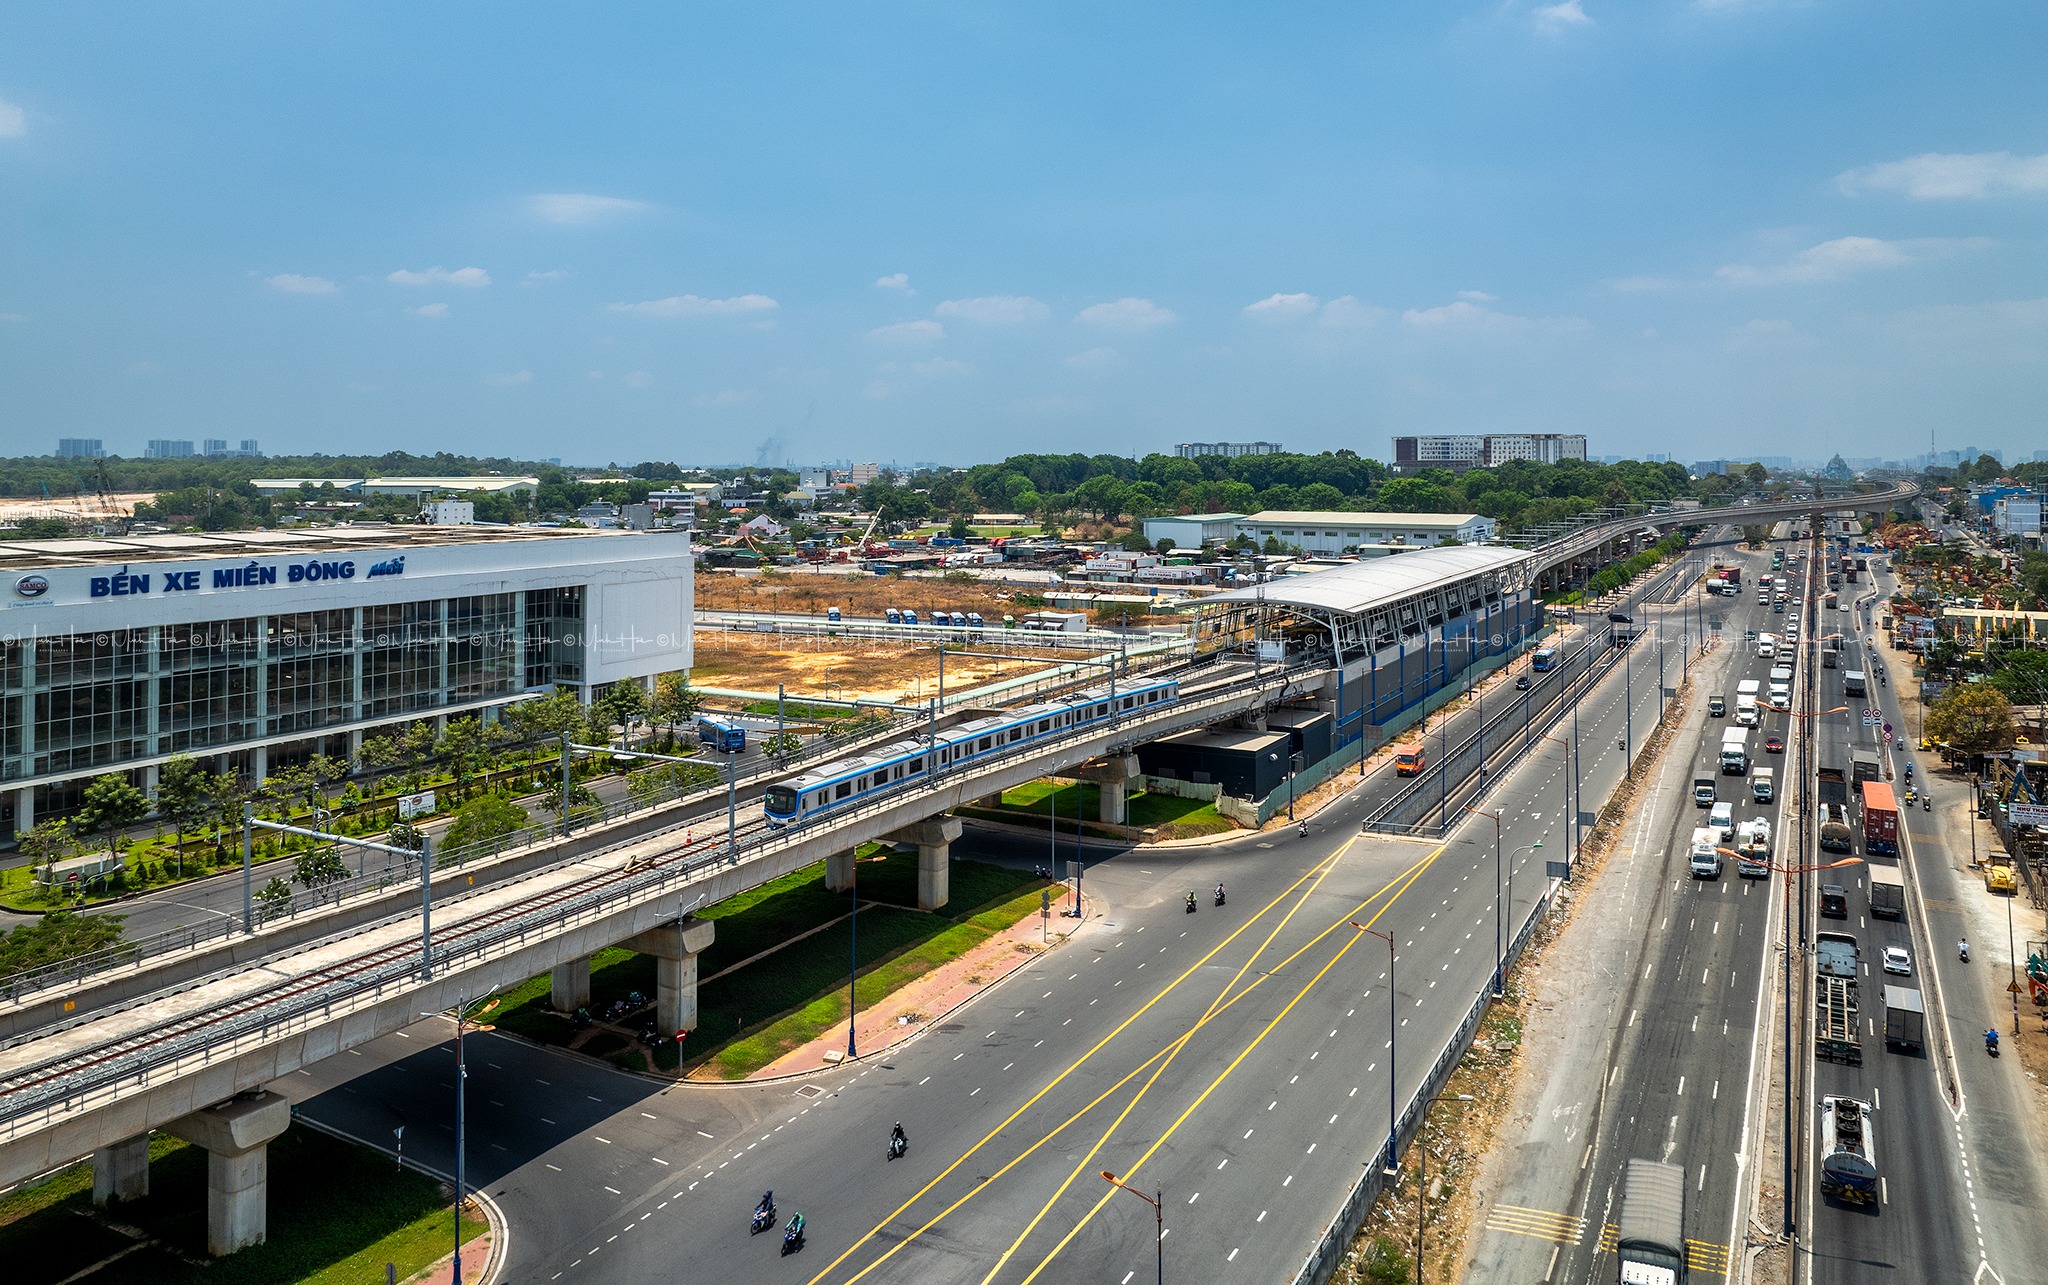 Ga Bến xe Suối Tiên là nhà ga thứ 14 của tuyến metro số 1, được kết nối trực tiếp với Bến xe Miền Đông mới, có chiều dài 137,5m, rộng 19m, cao 15,75m (ga loại D)